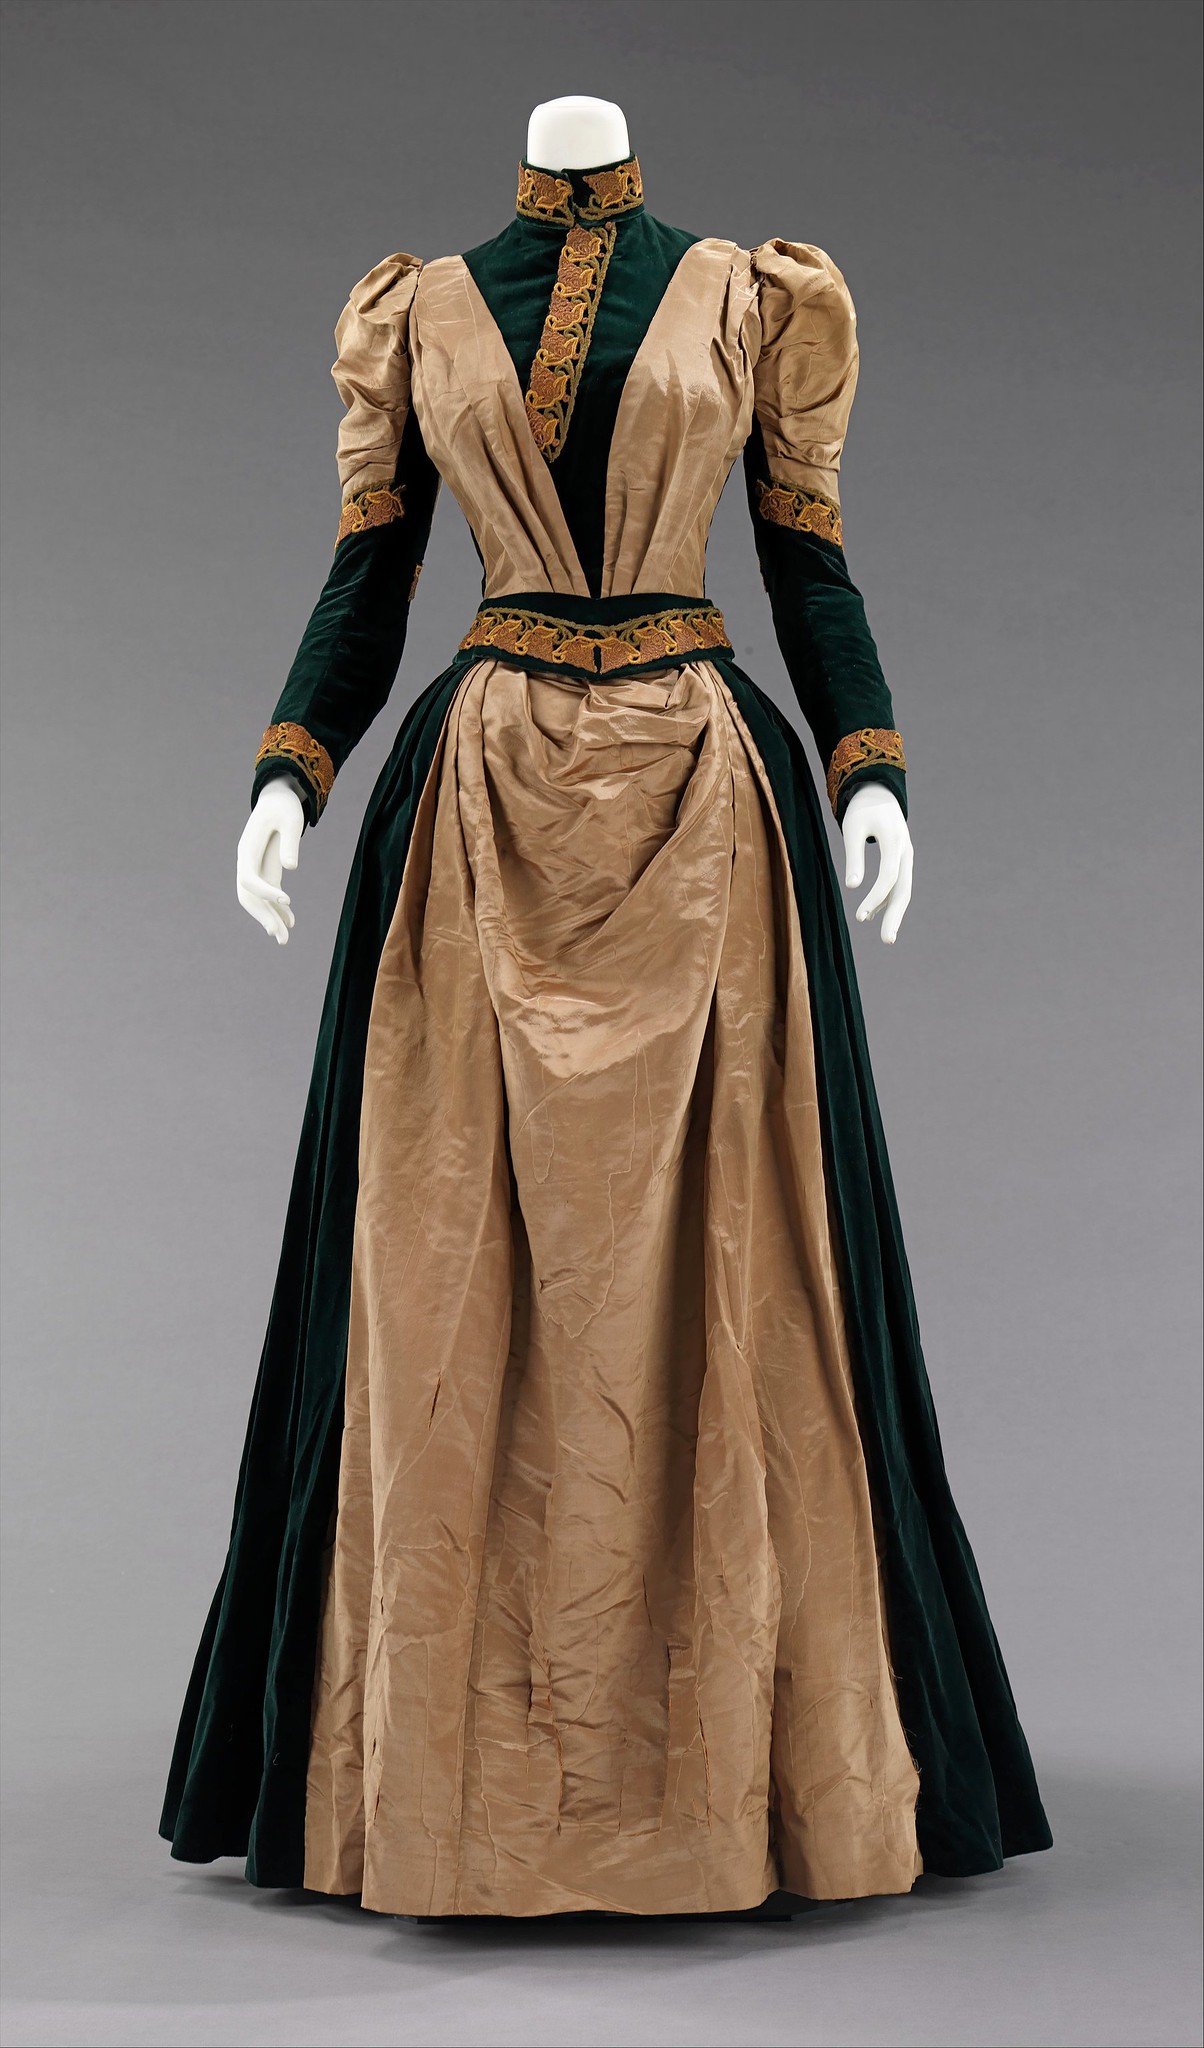 1885. American. Silk. metmuseum